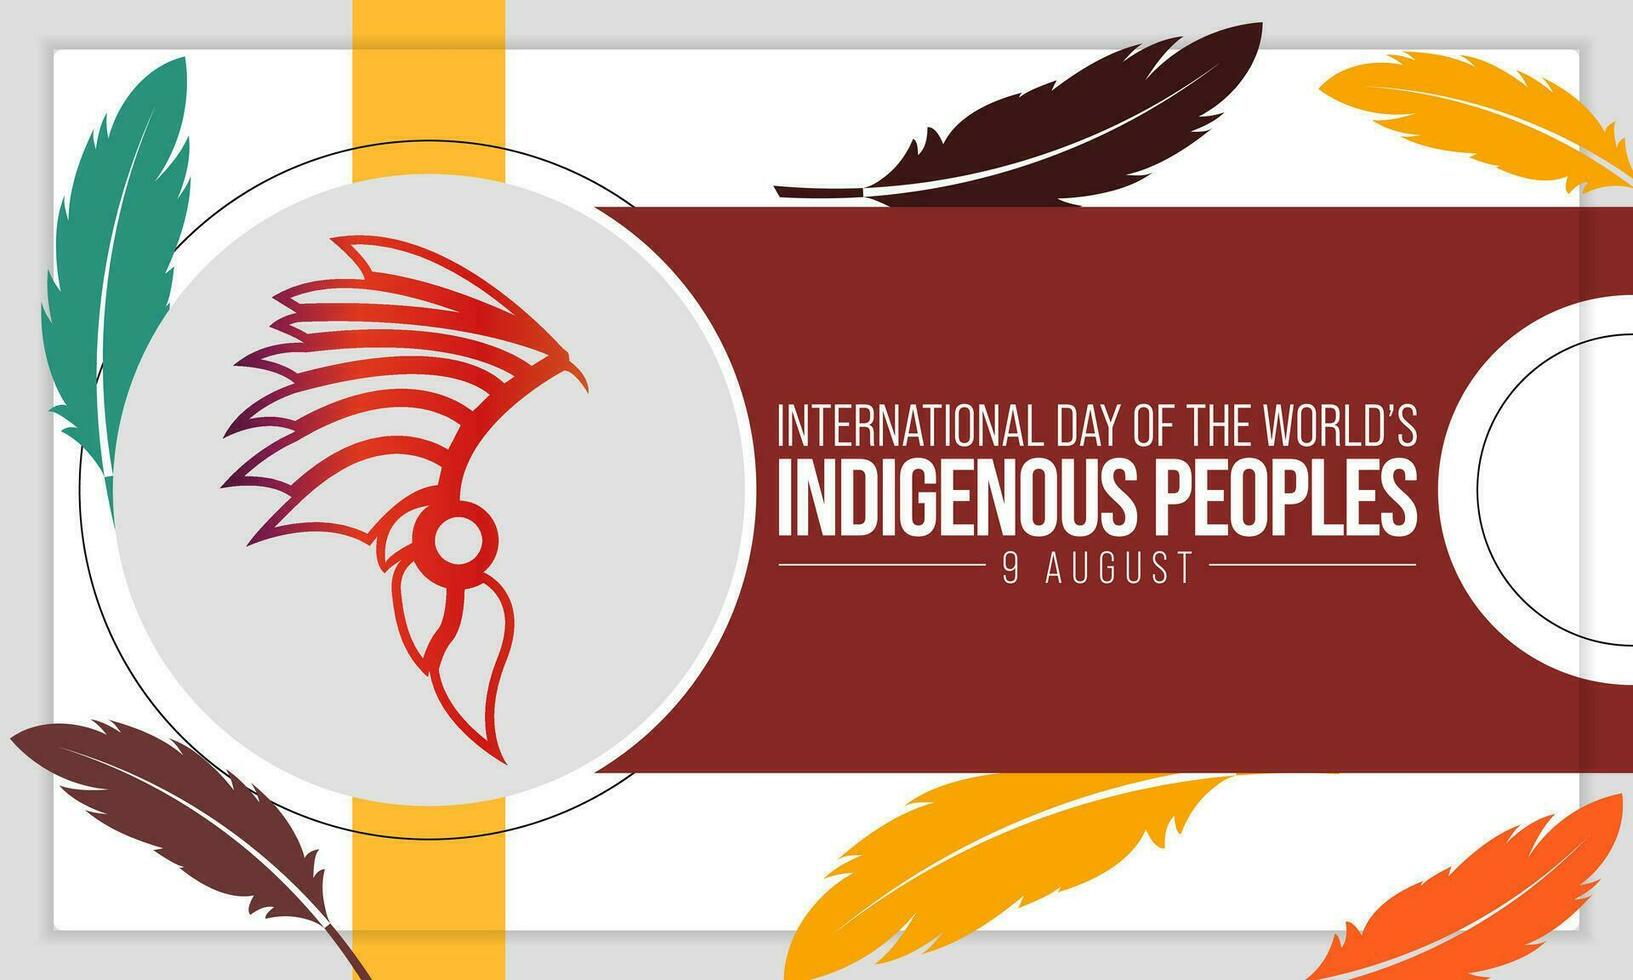 monde indigène journée est observé chaque année sur août 9, à élever conscience et protéger le droits de le indigène population. vecteur illustration